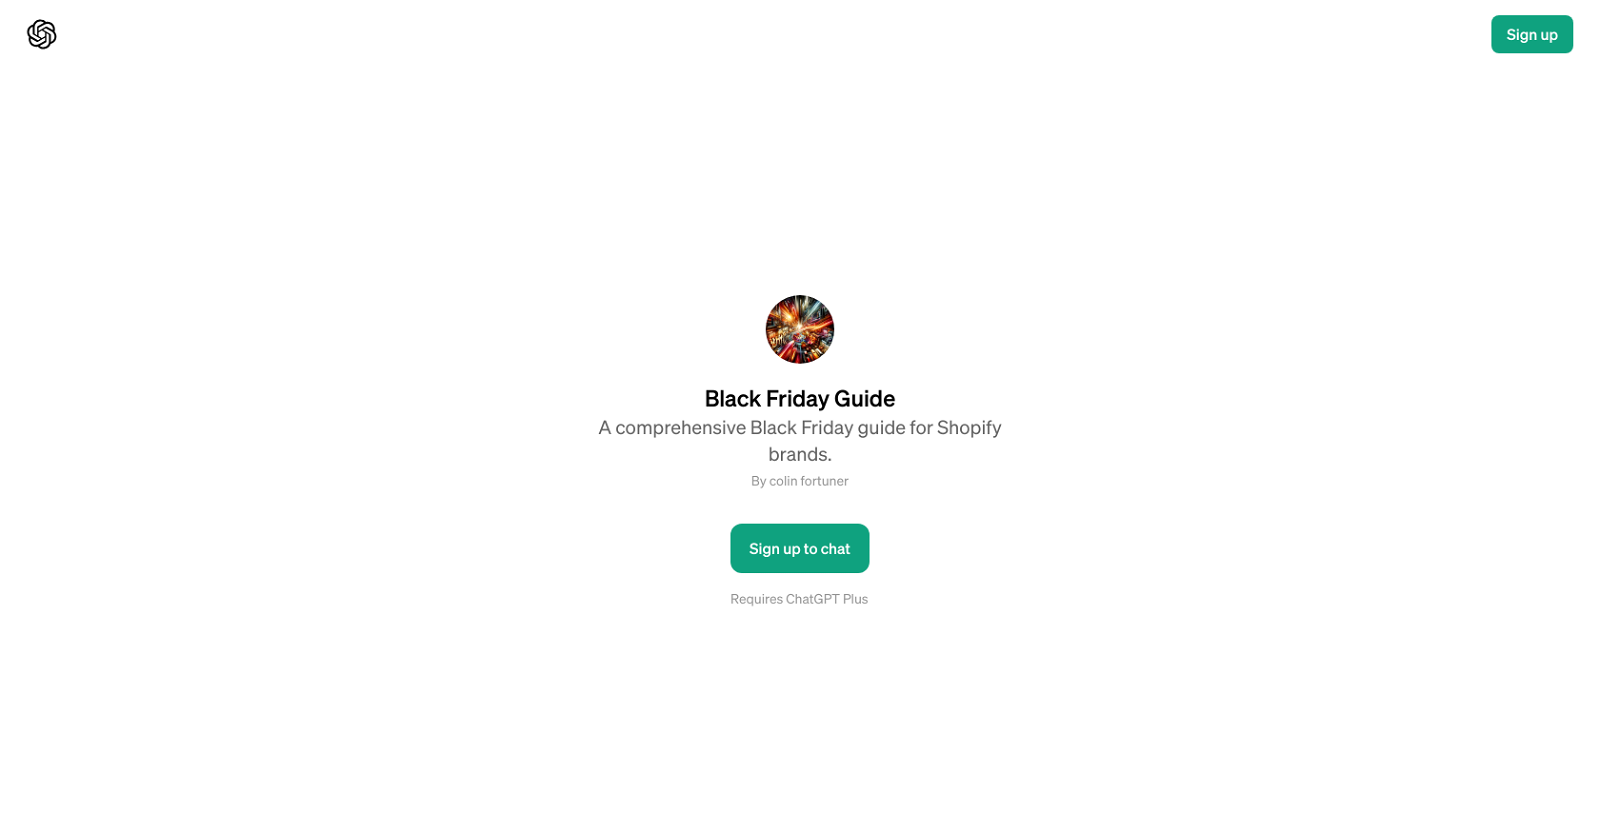 Black Friday Guide website